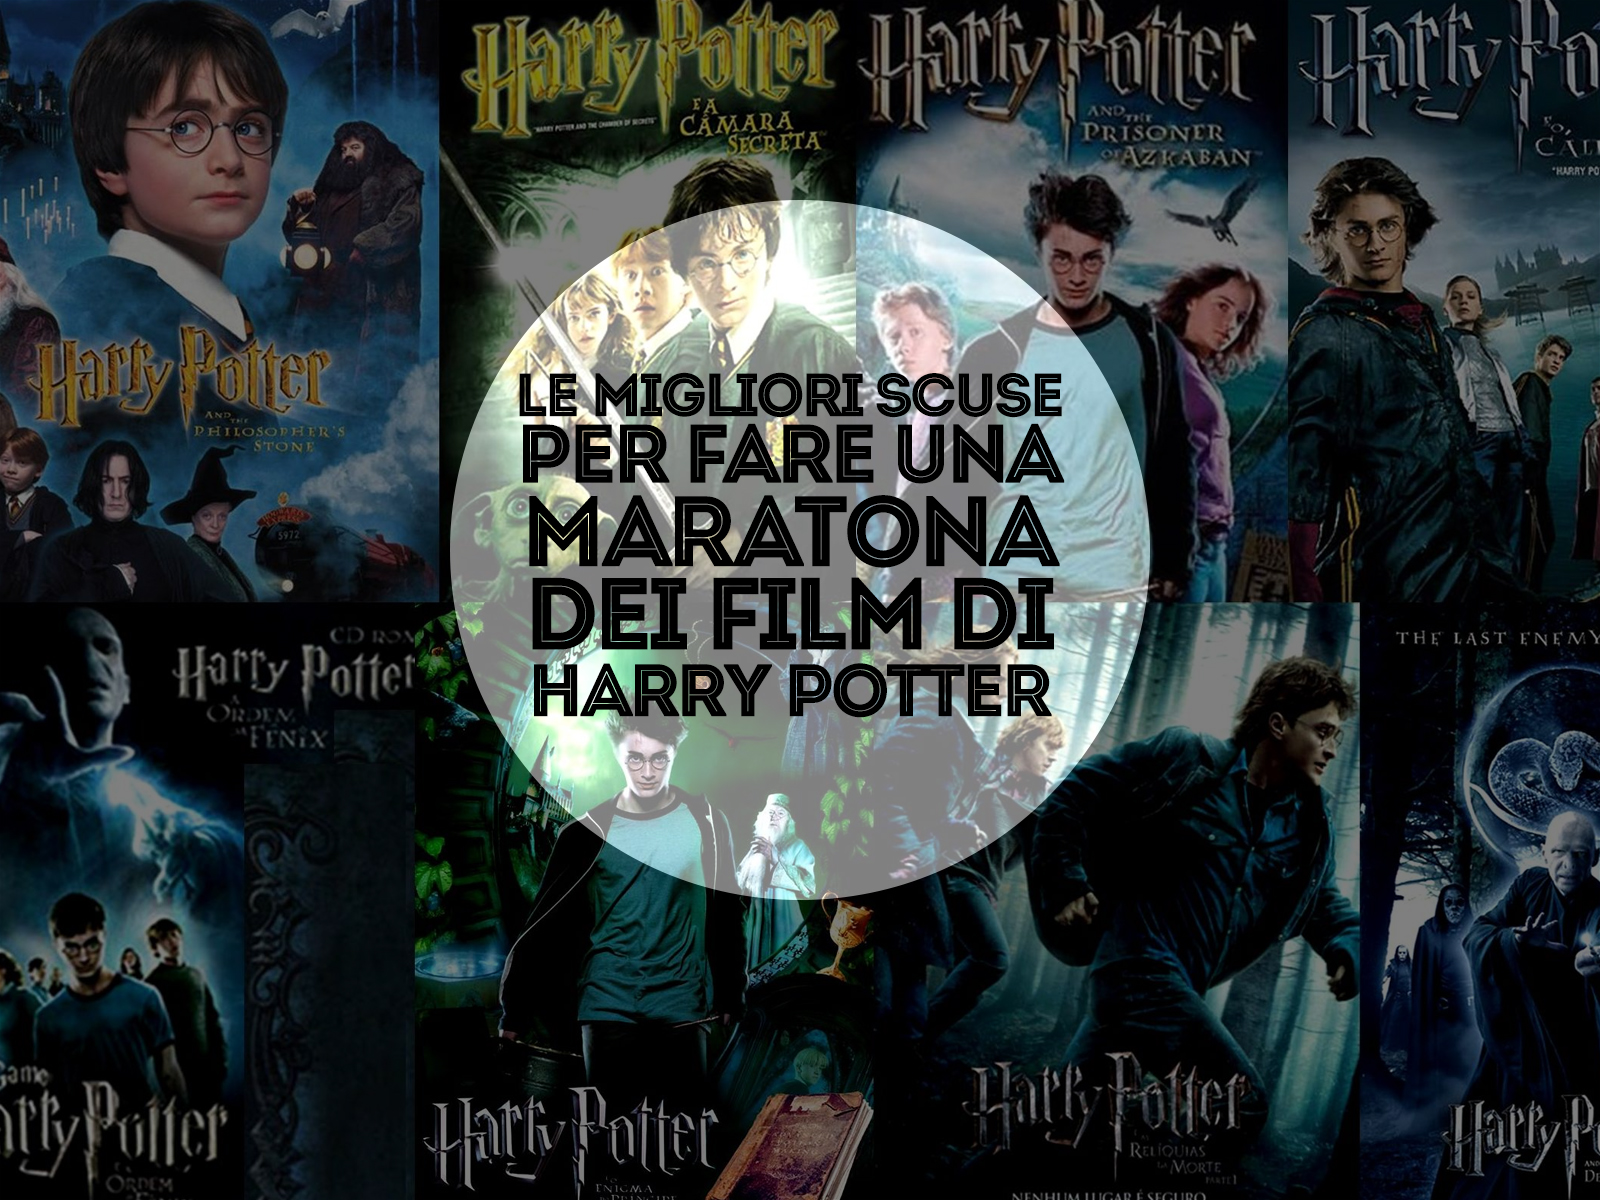 Le migliori scuse per fare una maratona dei film di Harry Potter